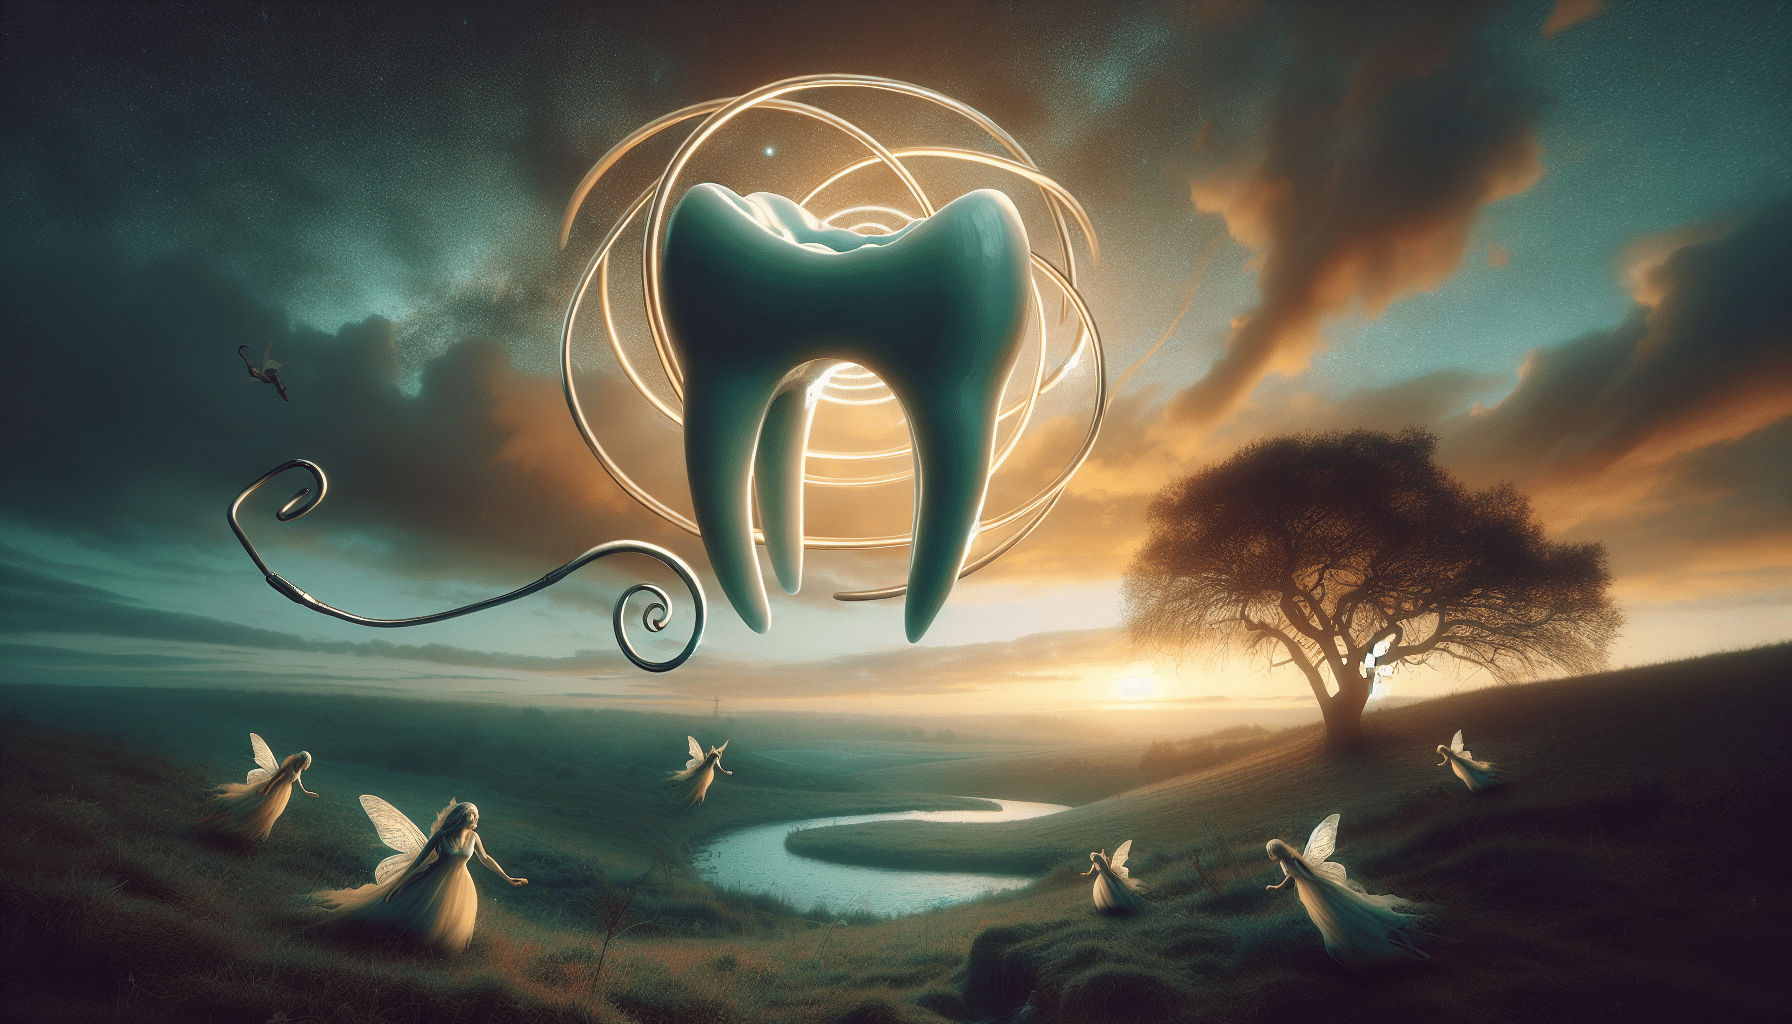 découvrez les raisons fascinantes derrière les rêves de perte de dents et explorez leur signification dans cet article captivant.